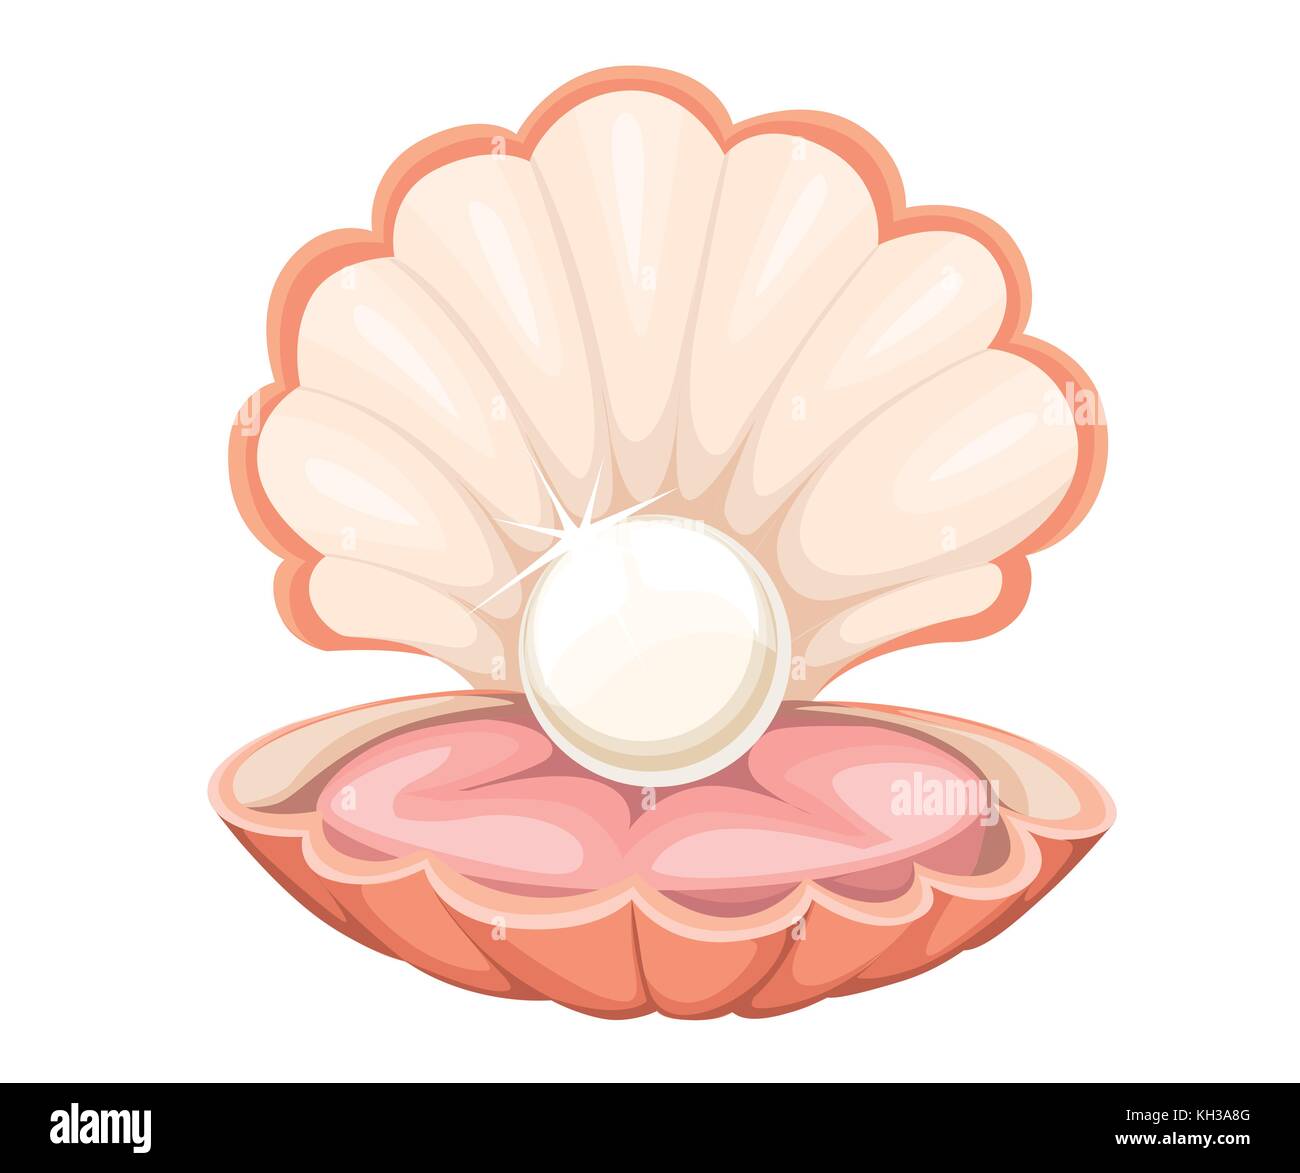 Migliore qualità di bella naturale aperto perla shell close up realistico unico oggetto prezioso al vettore di immagine illustrazione pagina del sito web e mobile app des Illustrazione Vettoriale